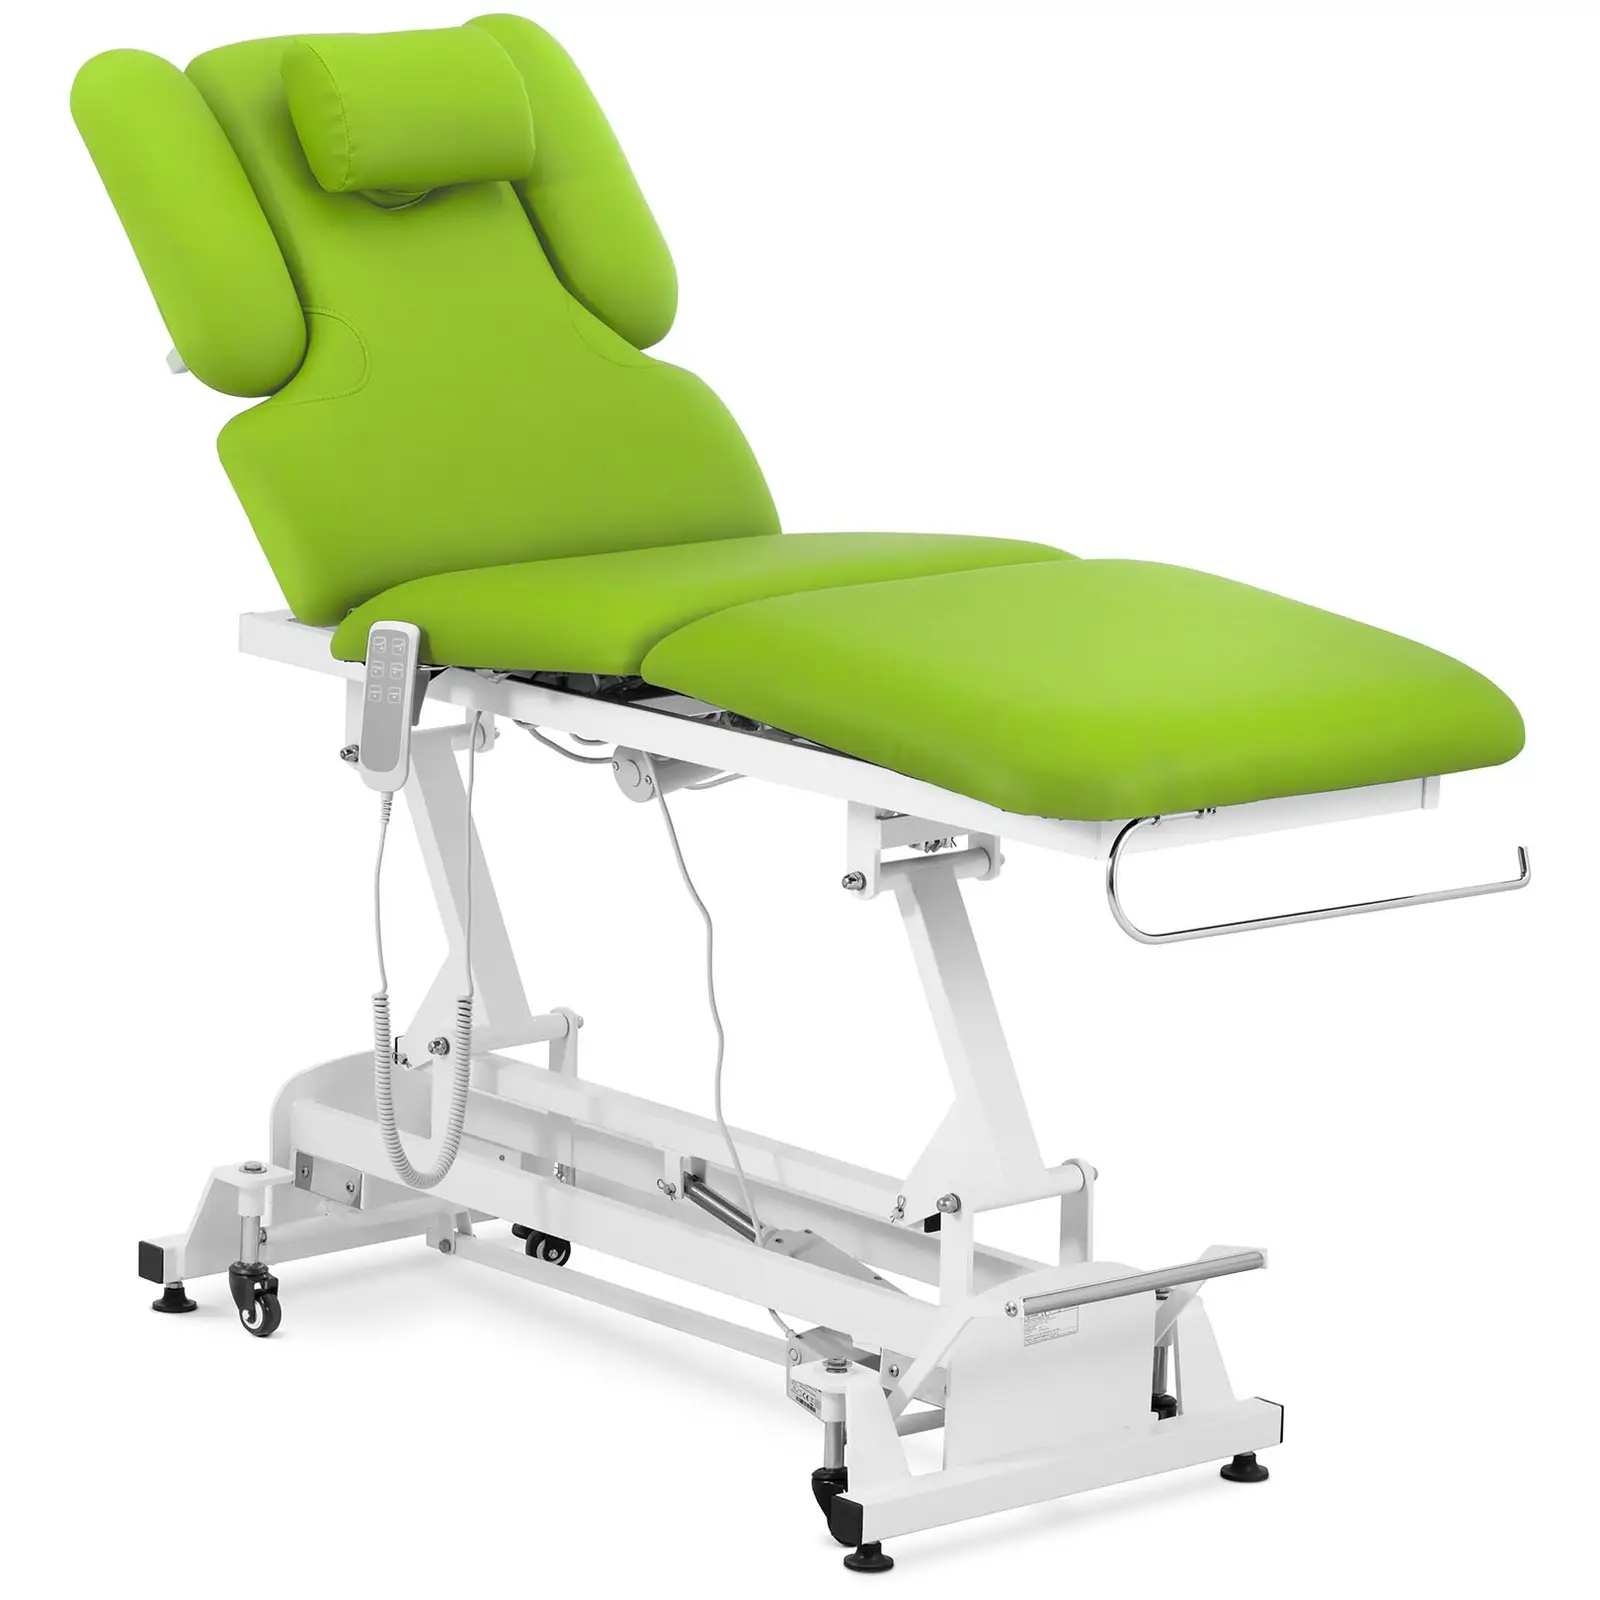 Lettino massaggio elettrico - 3 motori - 250 kg - verde chiaro